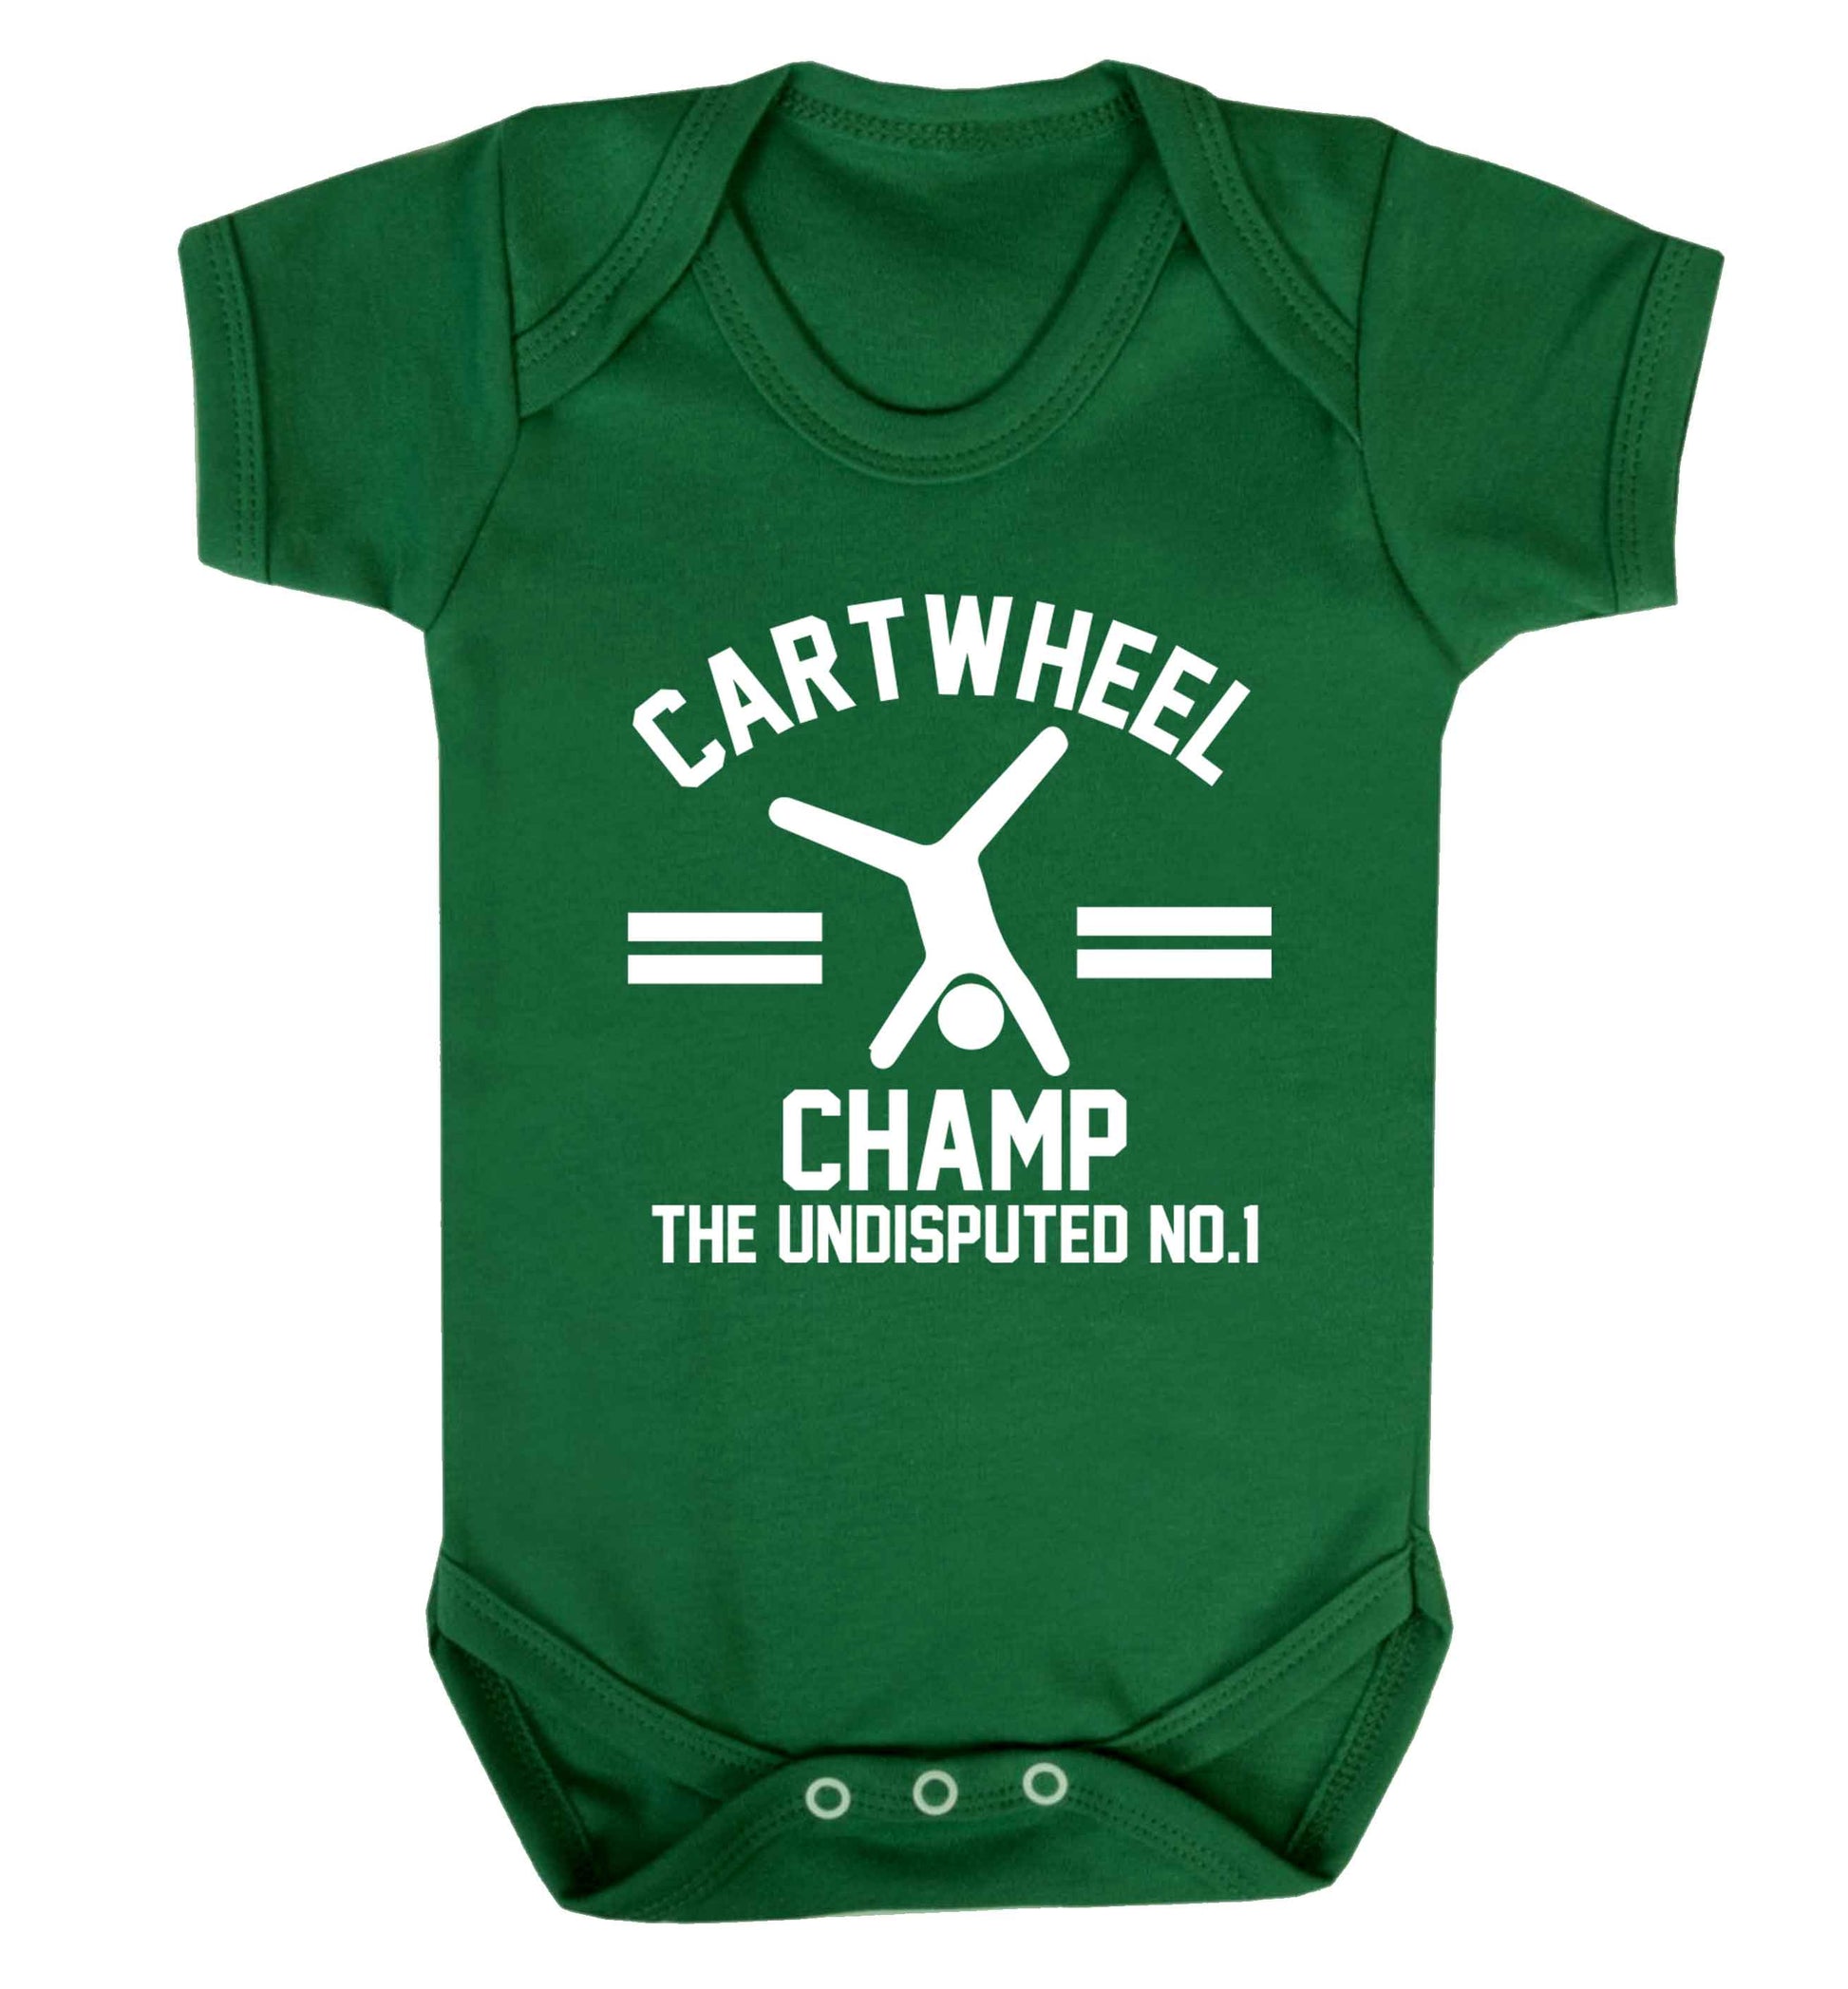 Undisputed cartwheel championship no.1  Baby Vest green 18-24 months